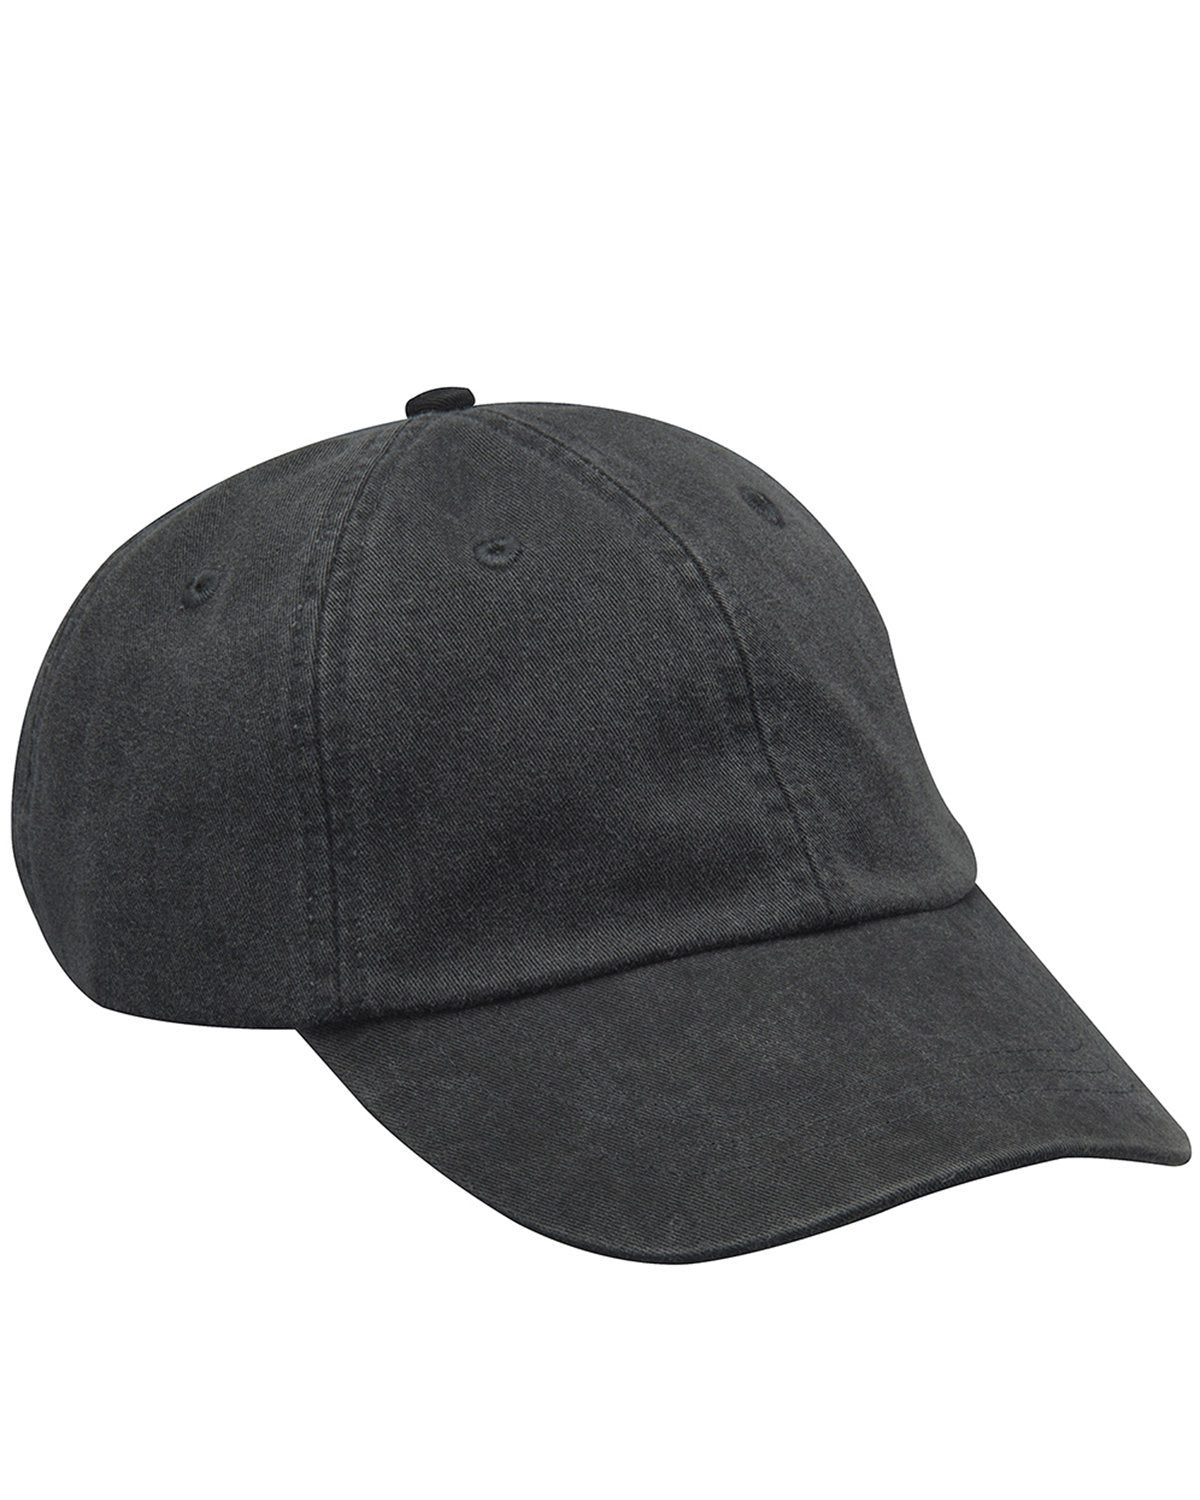 Black cap, front view.